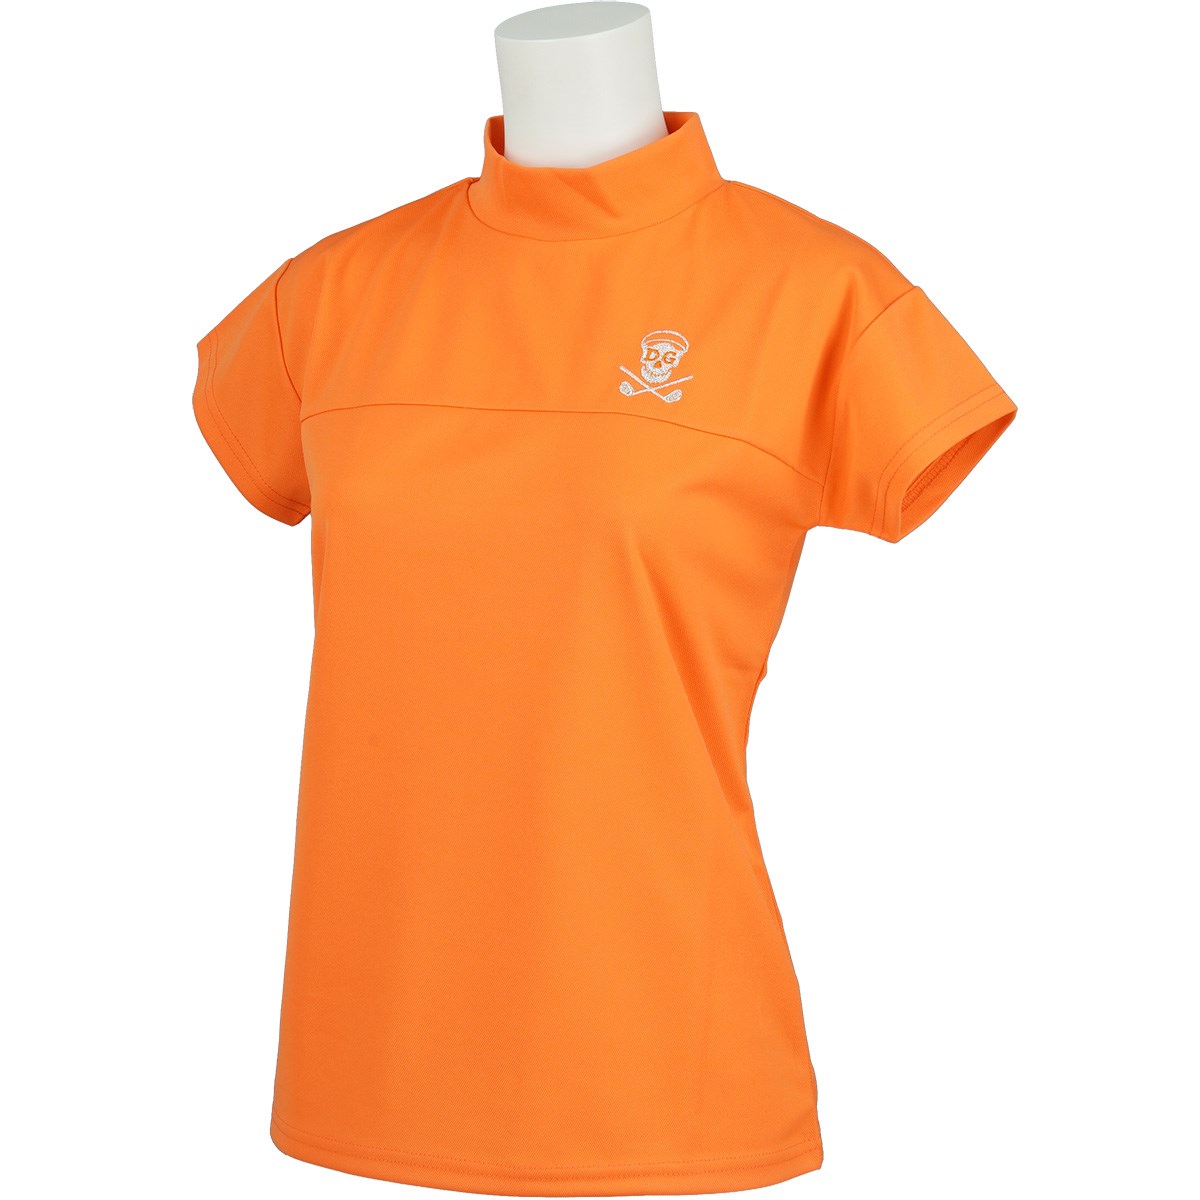 [定番モデル] デルソルゴルフ 切替 ストレッチ ハイネック半袖シャツ オレンジ レディース ゴルフウェア